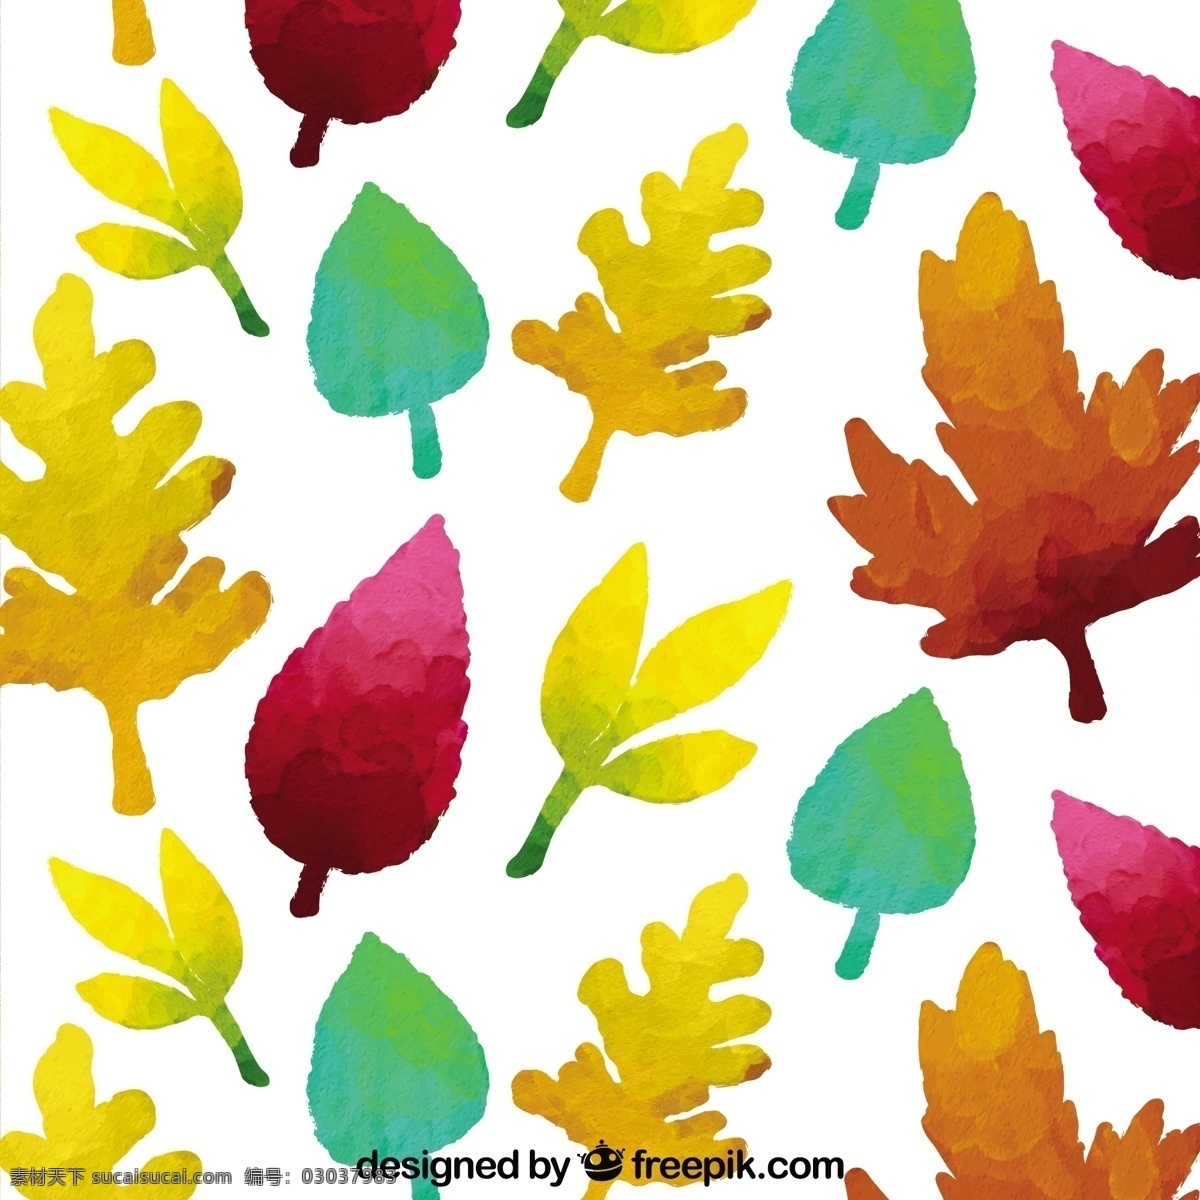 水彩画 叶子 图案 模式 水彩 一方面 自然 叶 秋 油漆 落下 无缝模式 无缝的 秋天的落叶 季节 手画 画的季节 秋天 白色